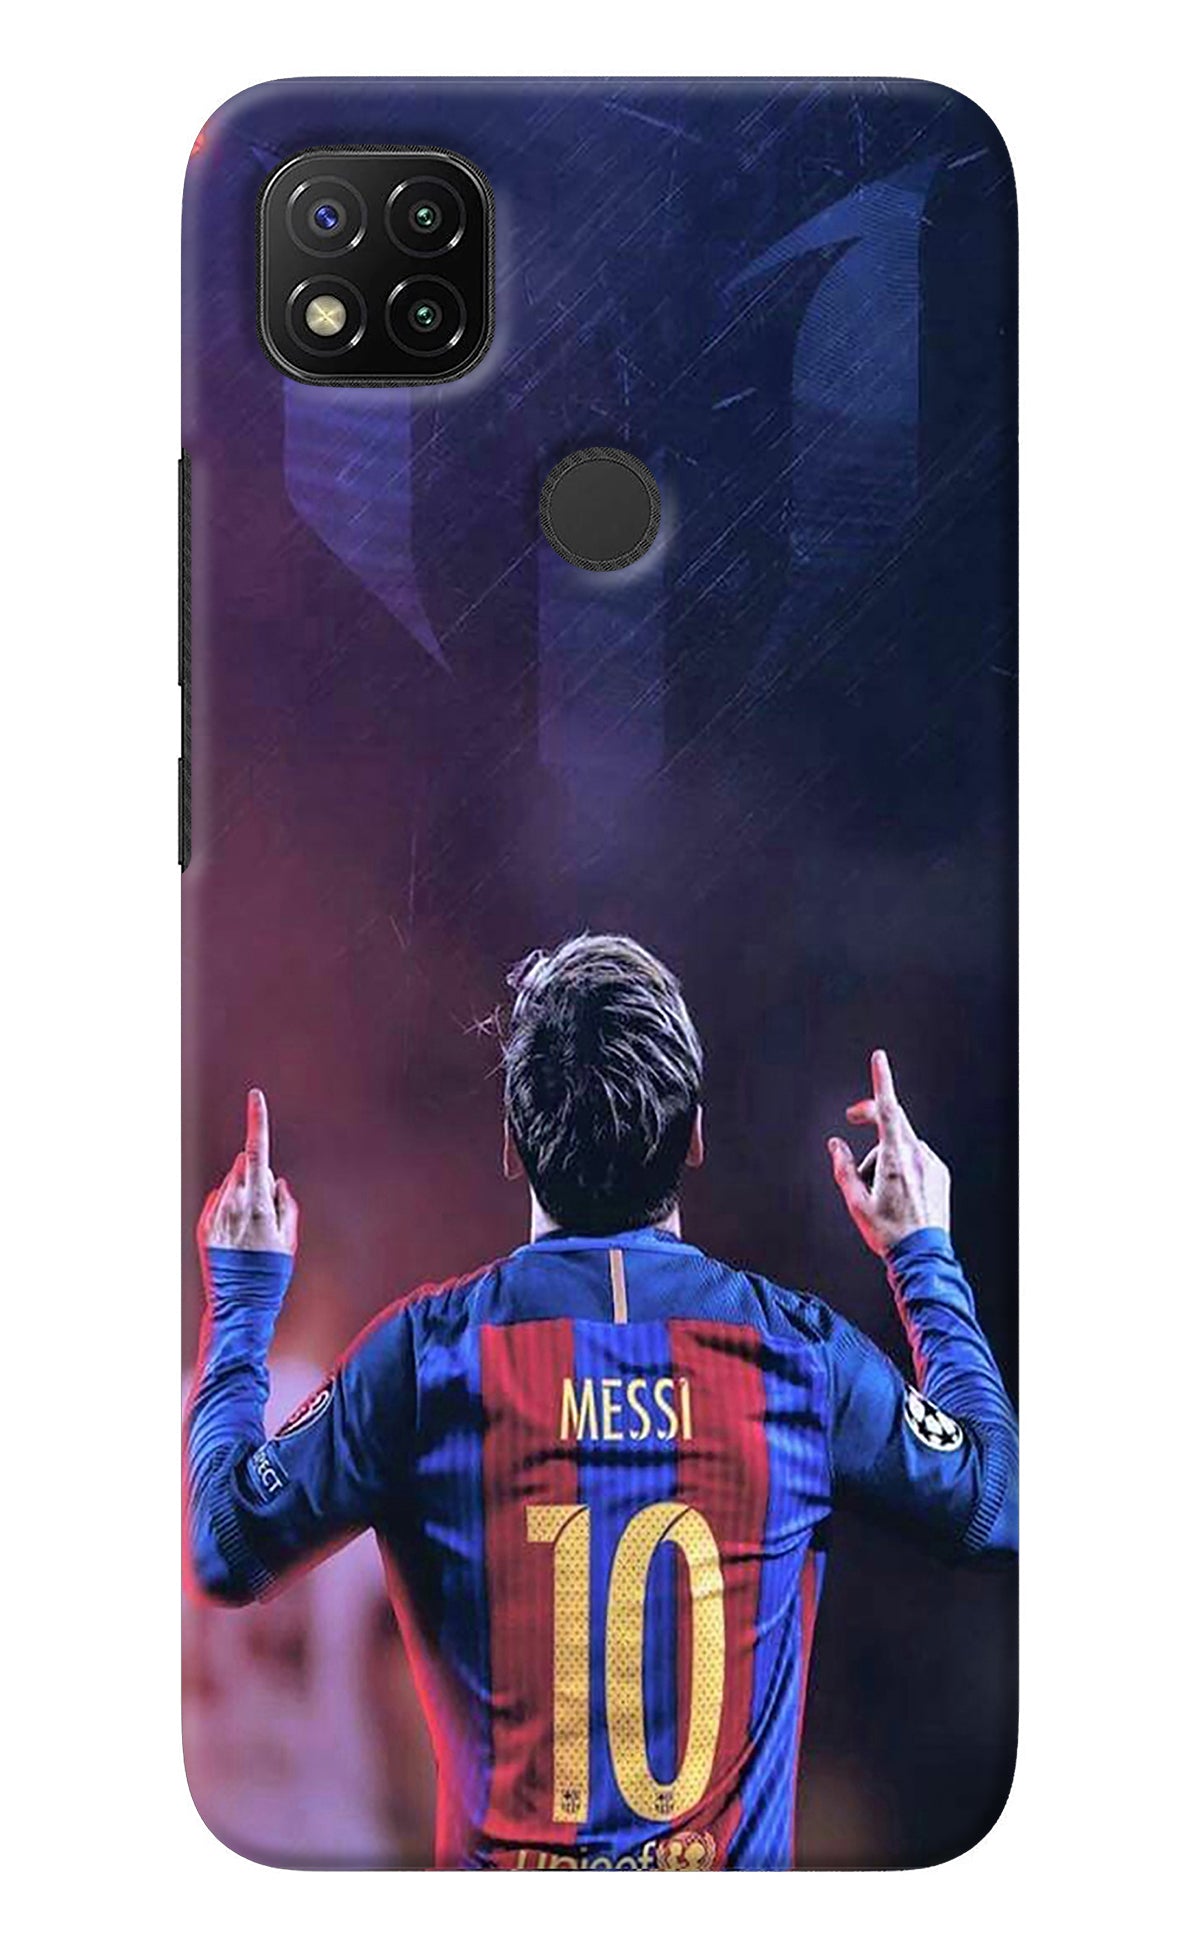 Messi Redmi 9 Back Cover